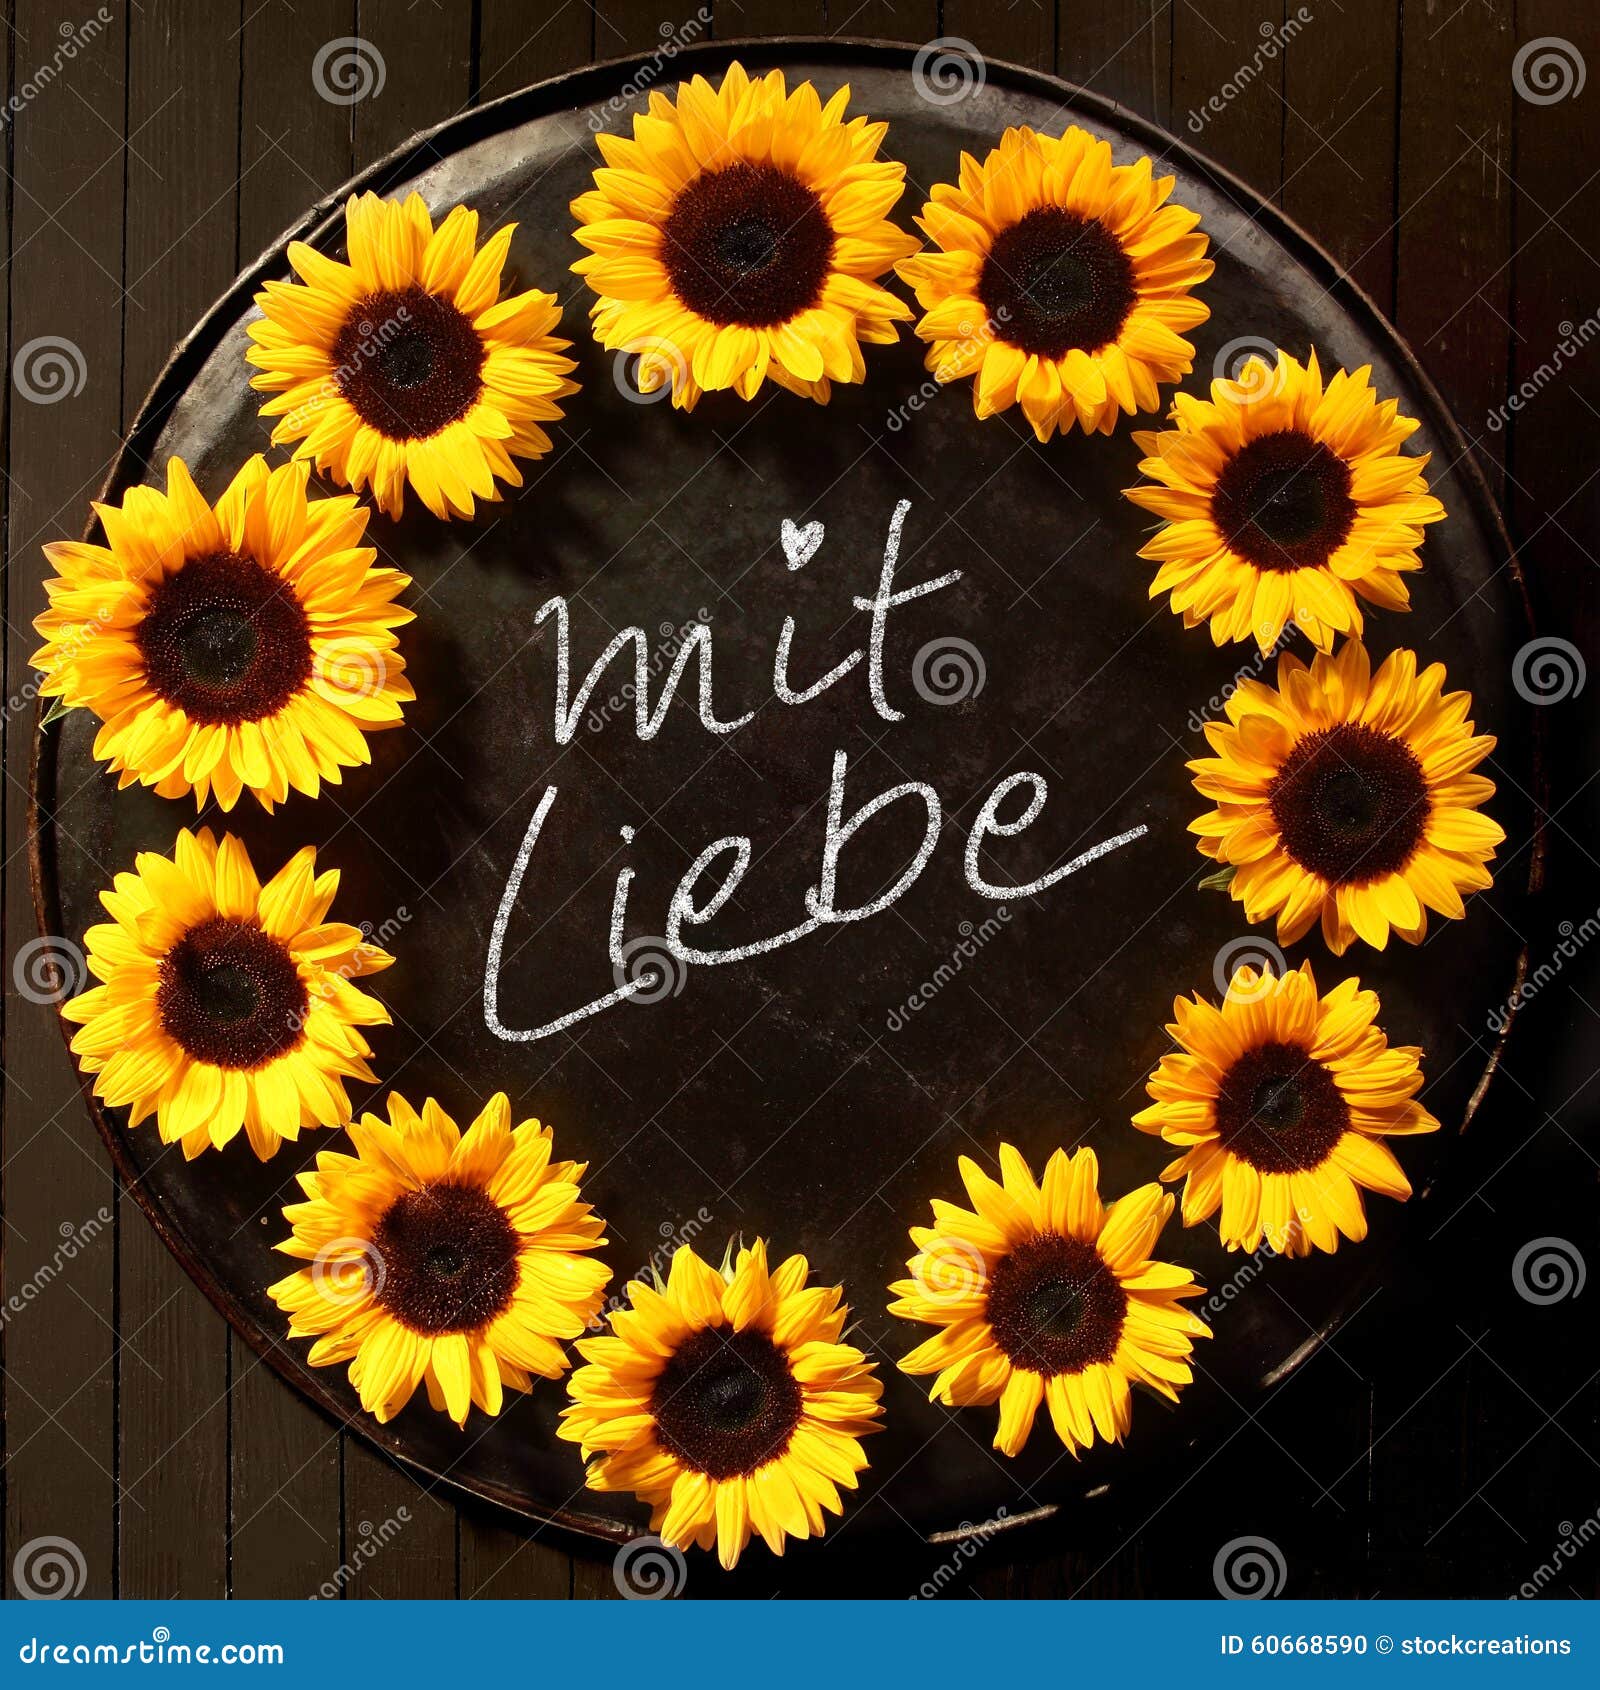 mit liebe - with love - sunflower frame